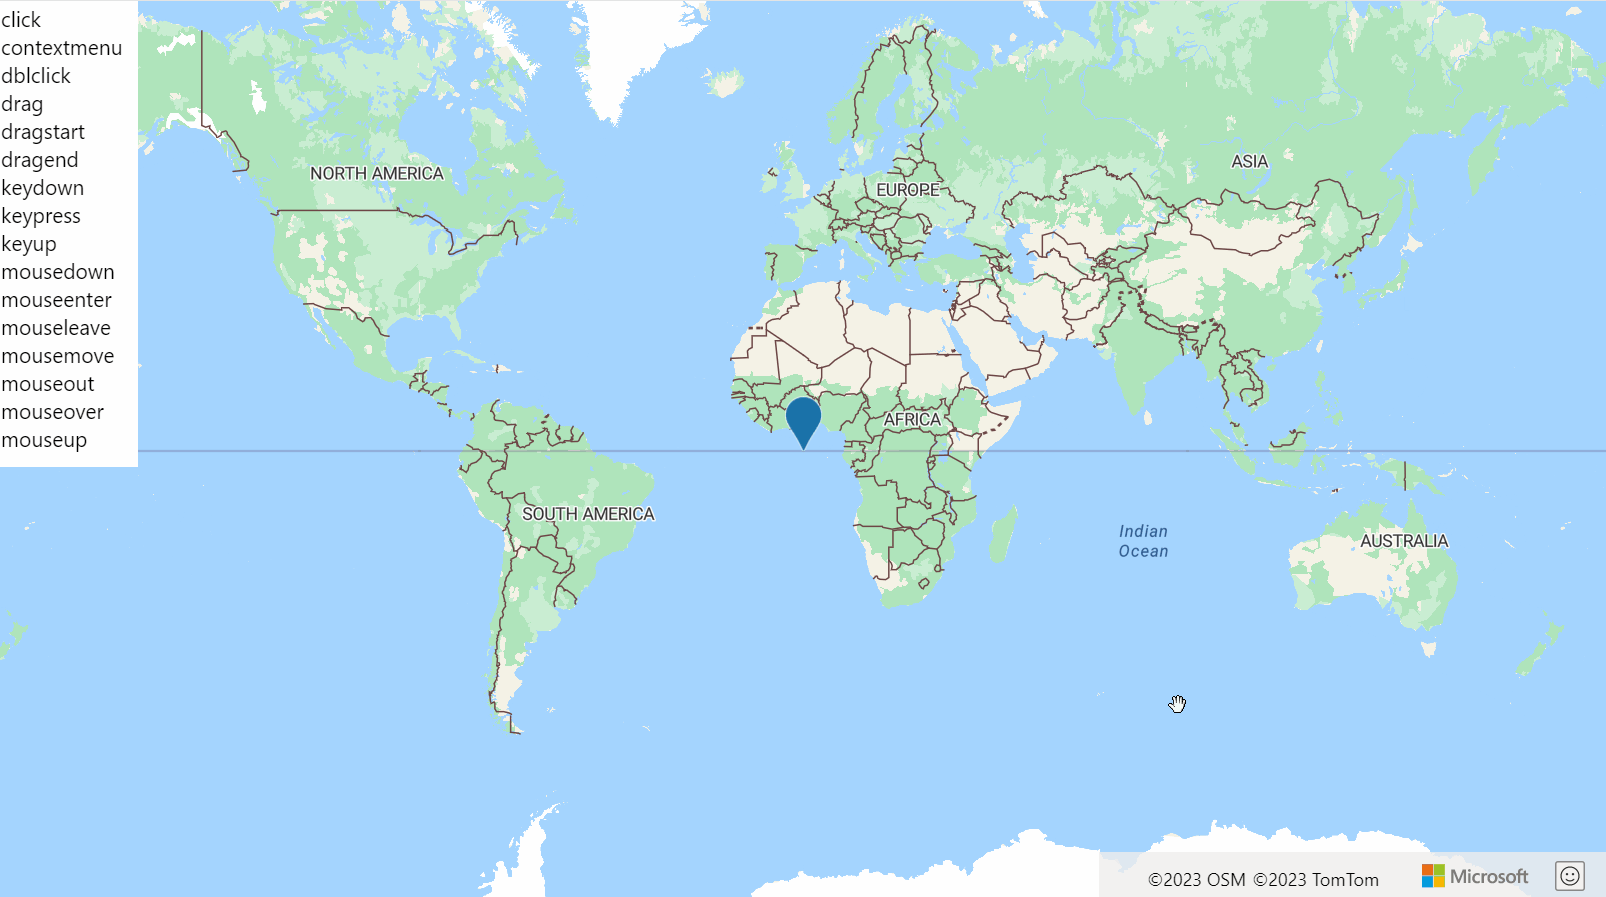 Bir HtmlMarker içeren dünya haritasını ve olay başlatıldığında yeşil renkle vurgulanan HtmlMarker olaylarının listesini gösteren ekran görüntüsü.